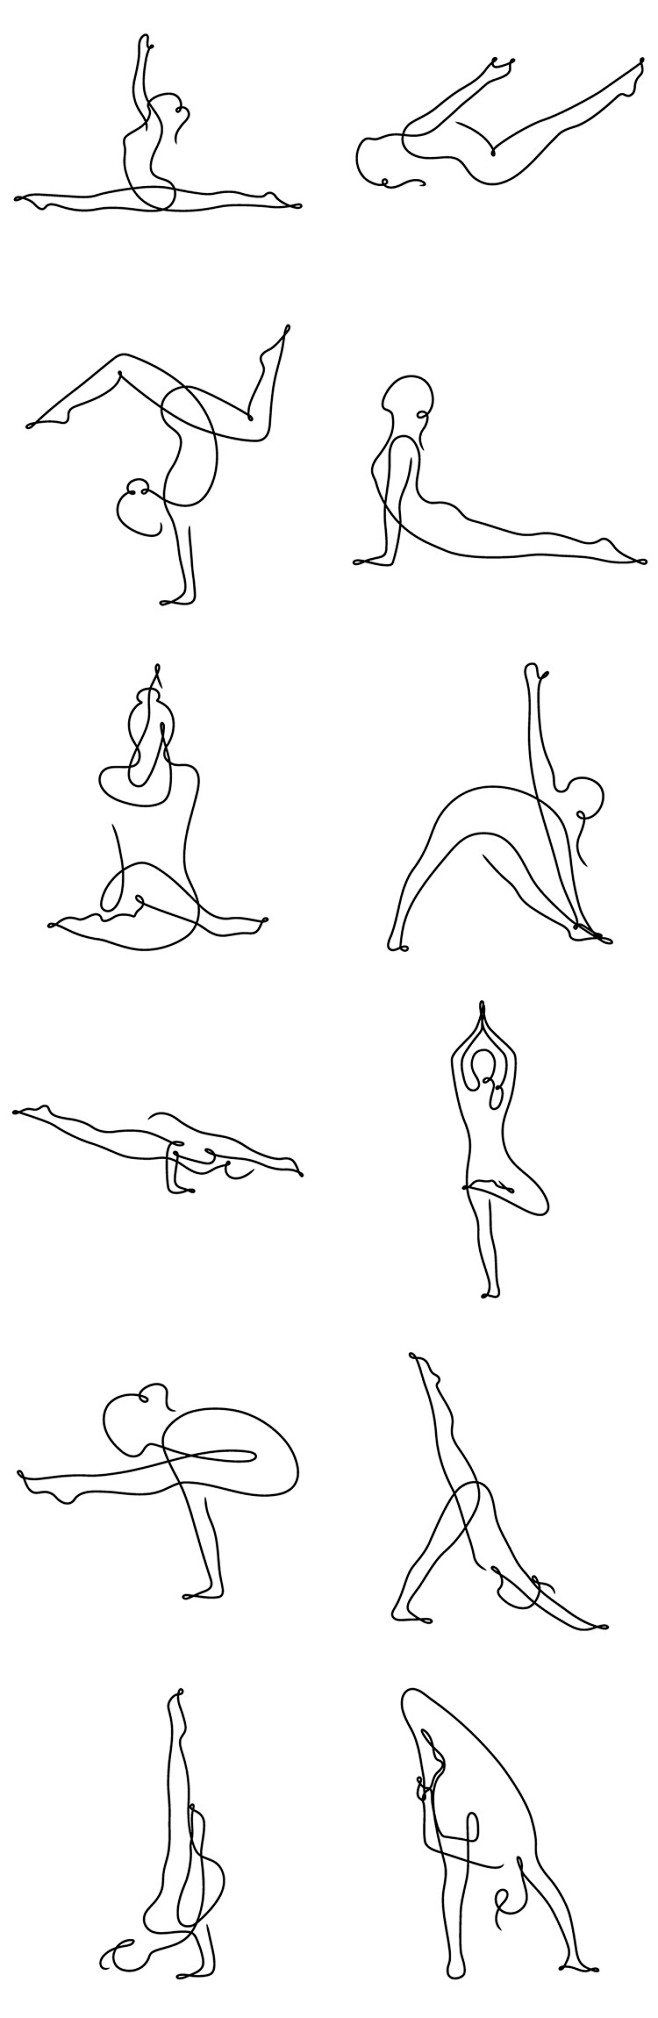 艺术43款简洁线条柔和女性运动项目瑜伽插...